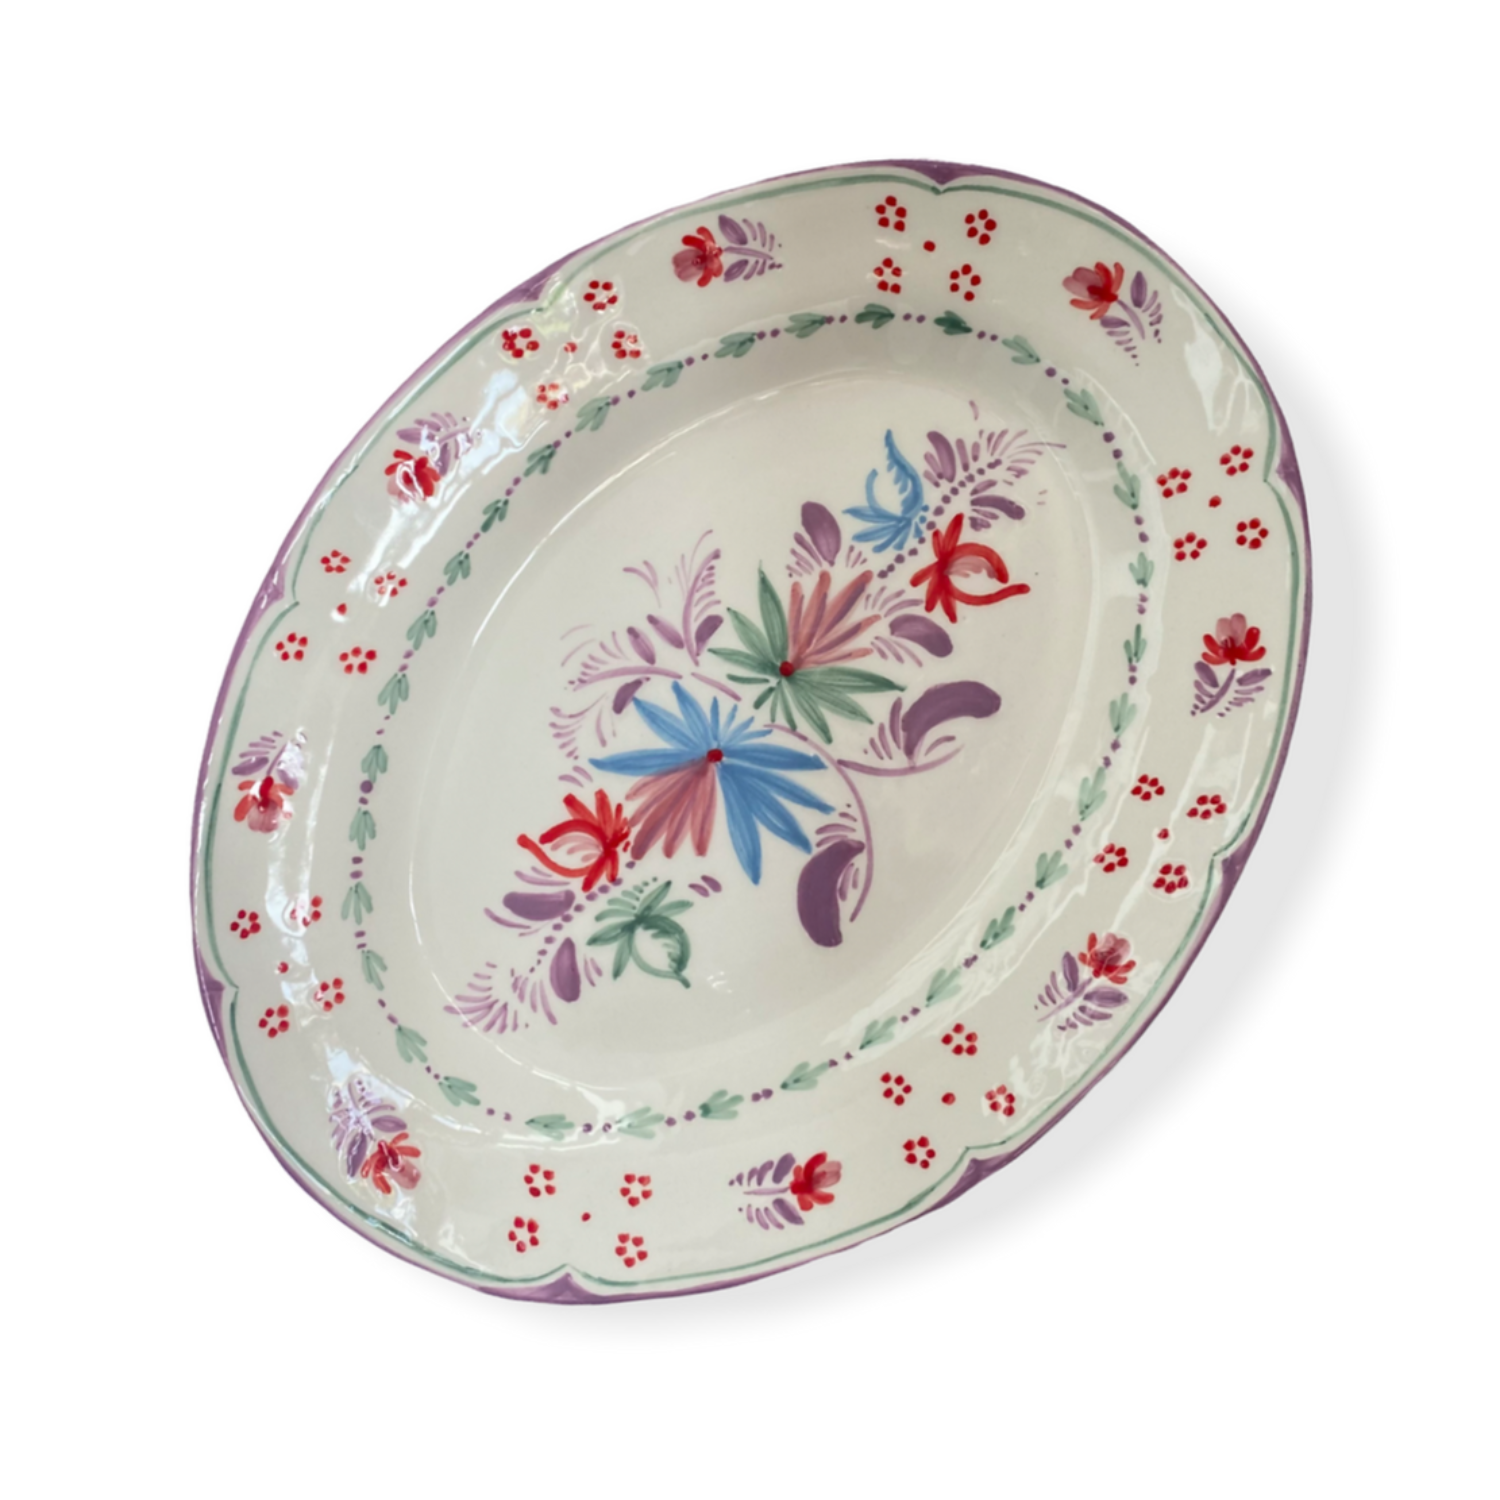 Dinner Date Platter - Multicolor Floral